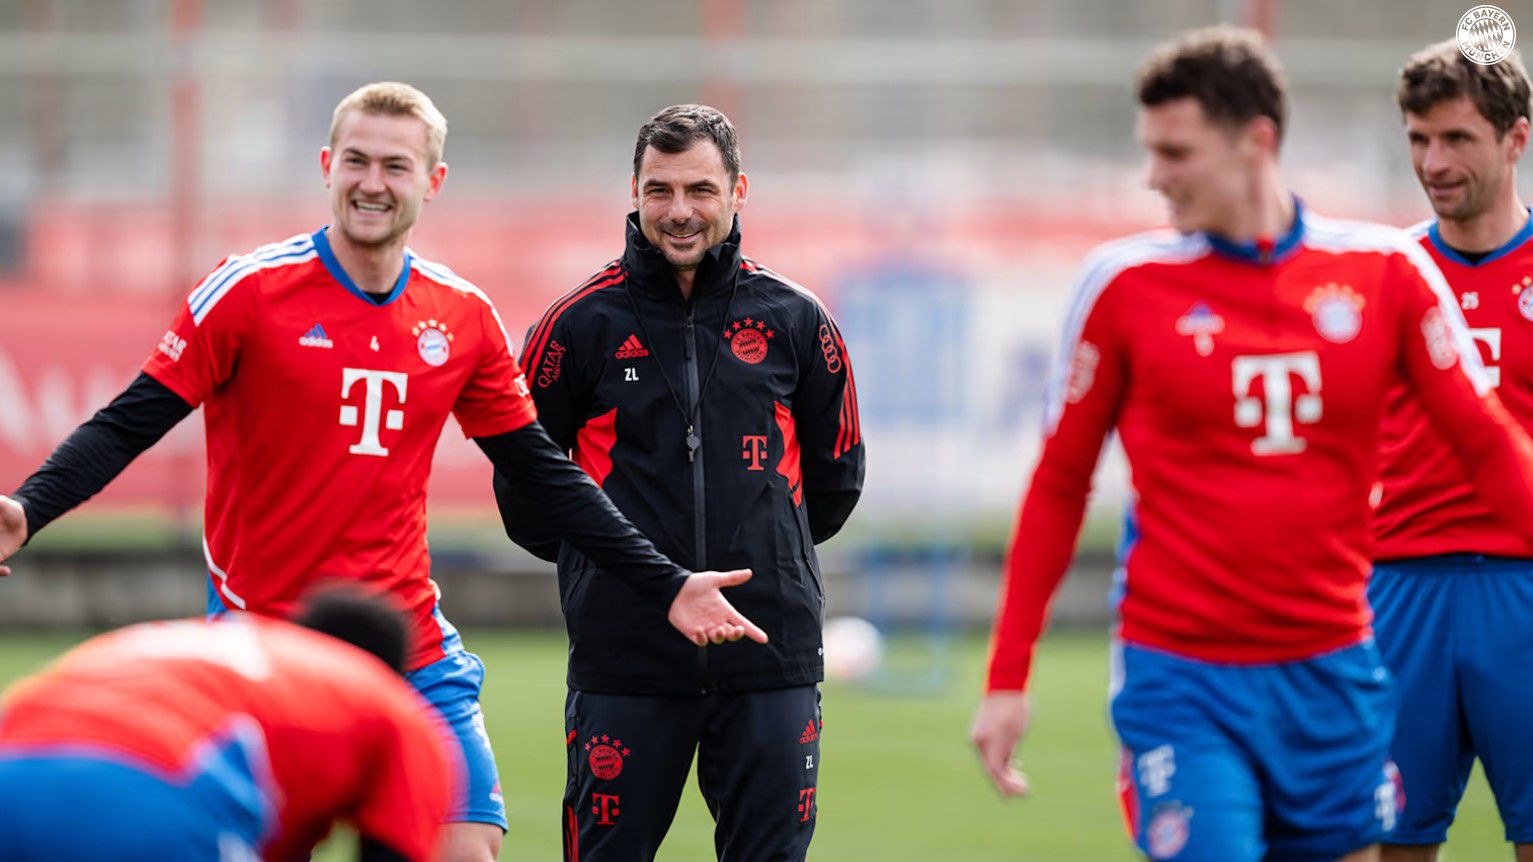 Jó hangulatban kezdte meg a munkát a Bayern játékosokkal a magyar szakember